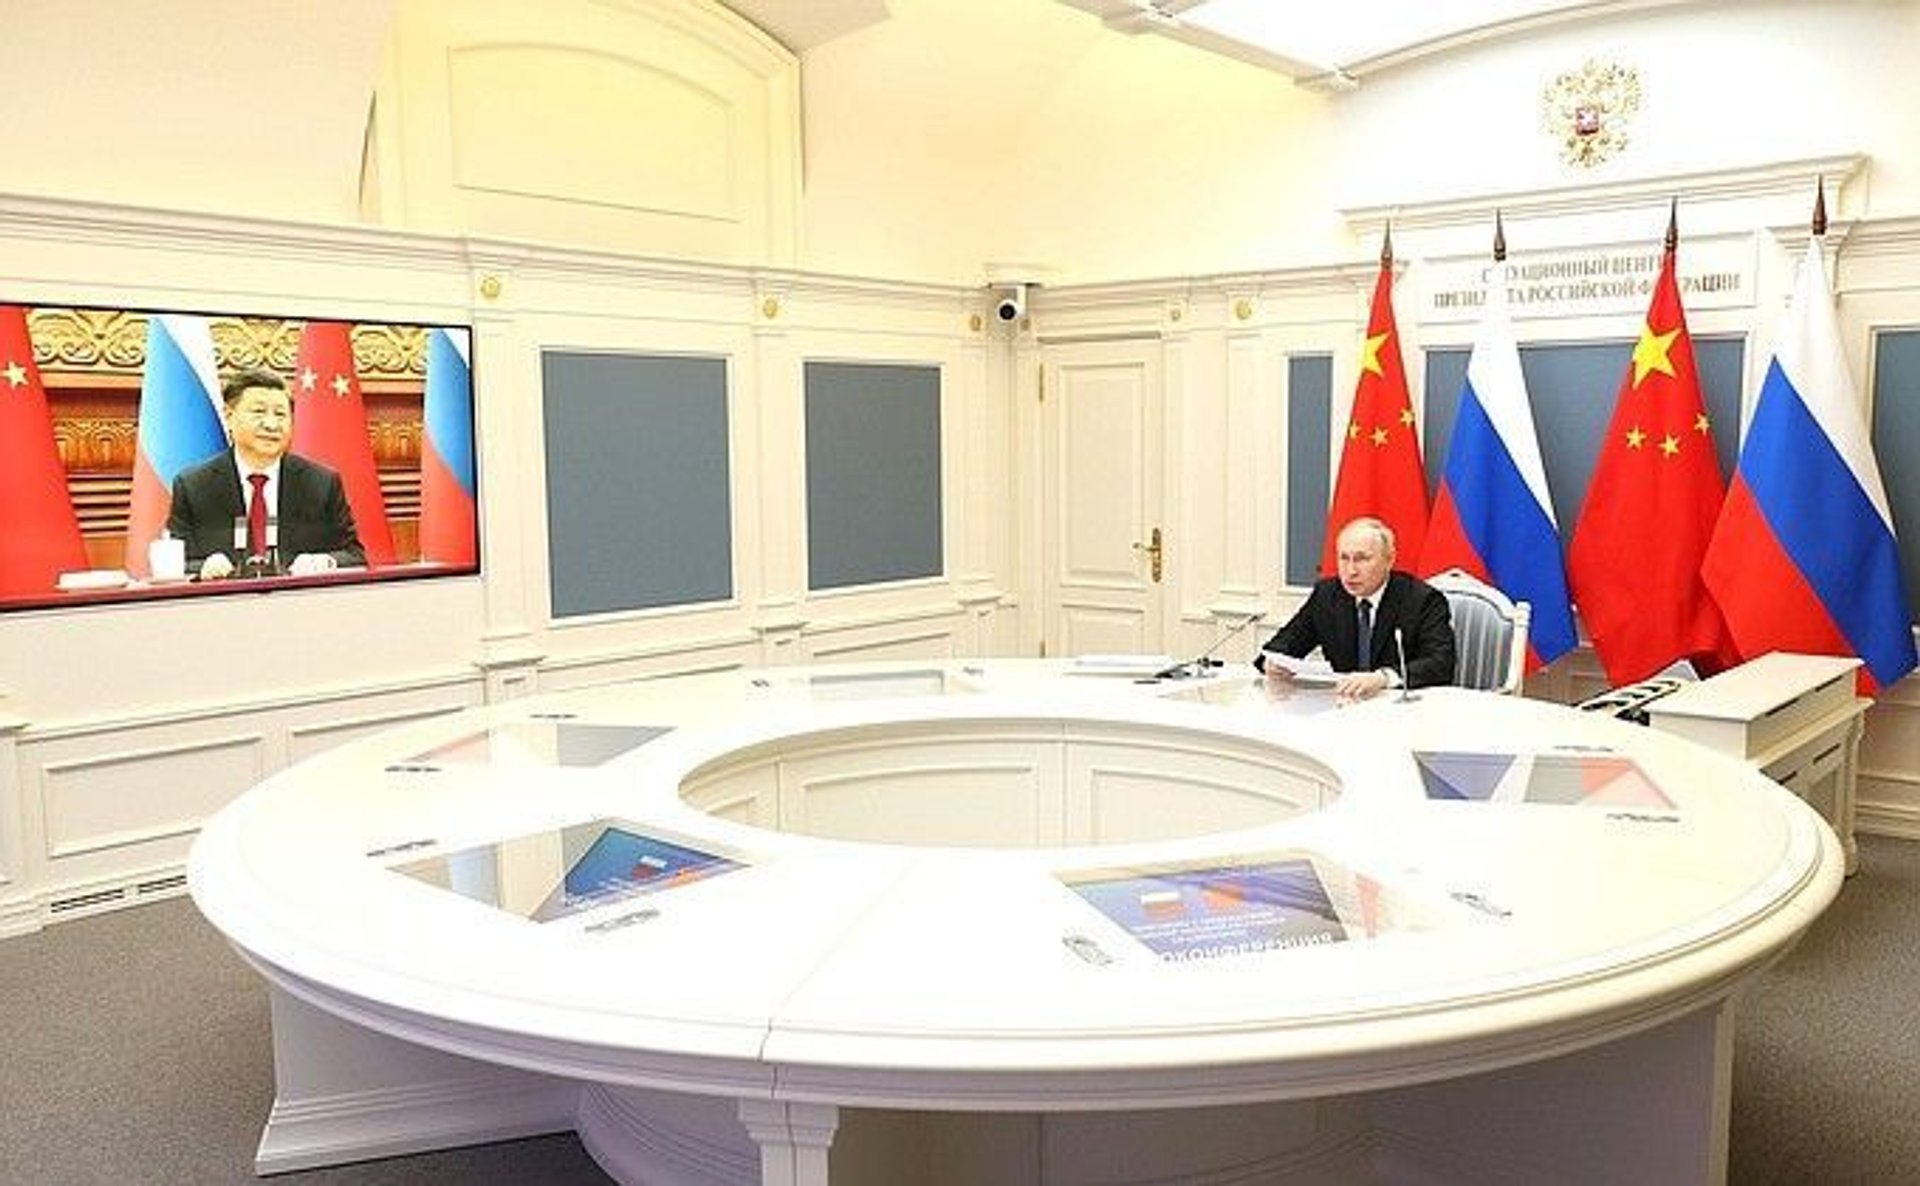 Putin, Xi Jingping